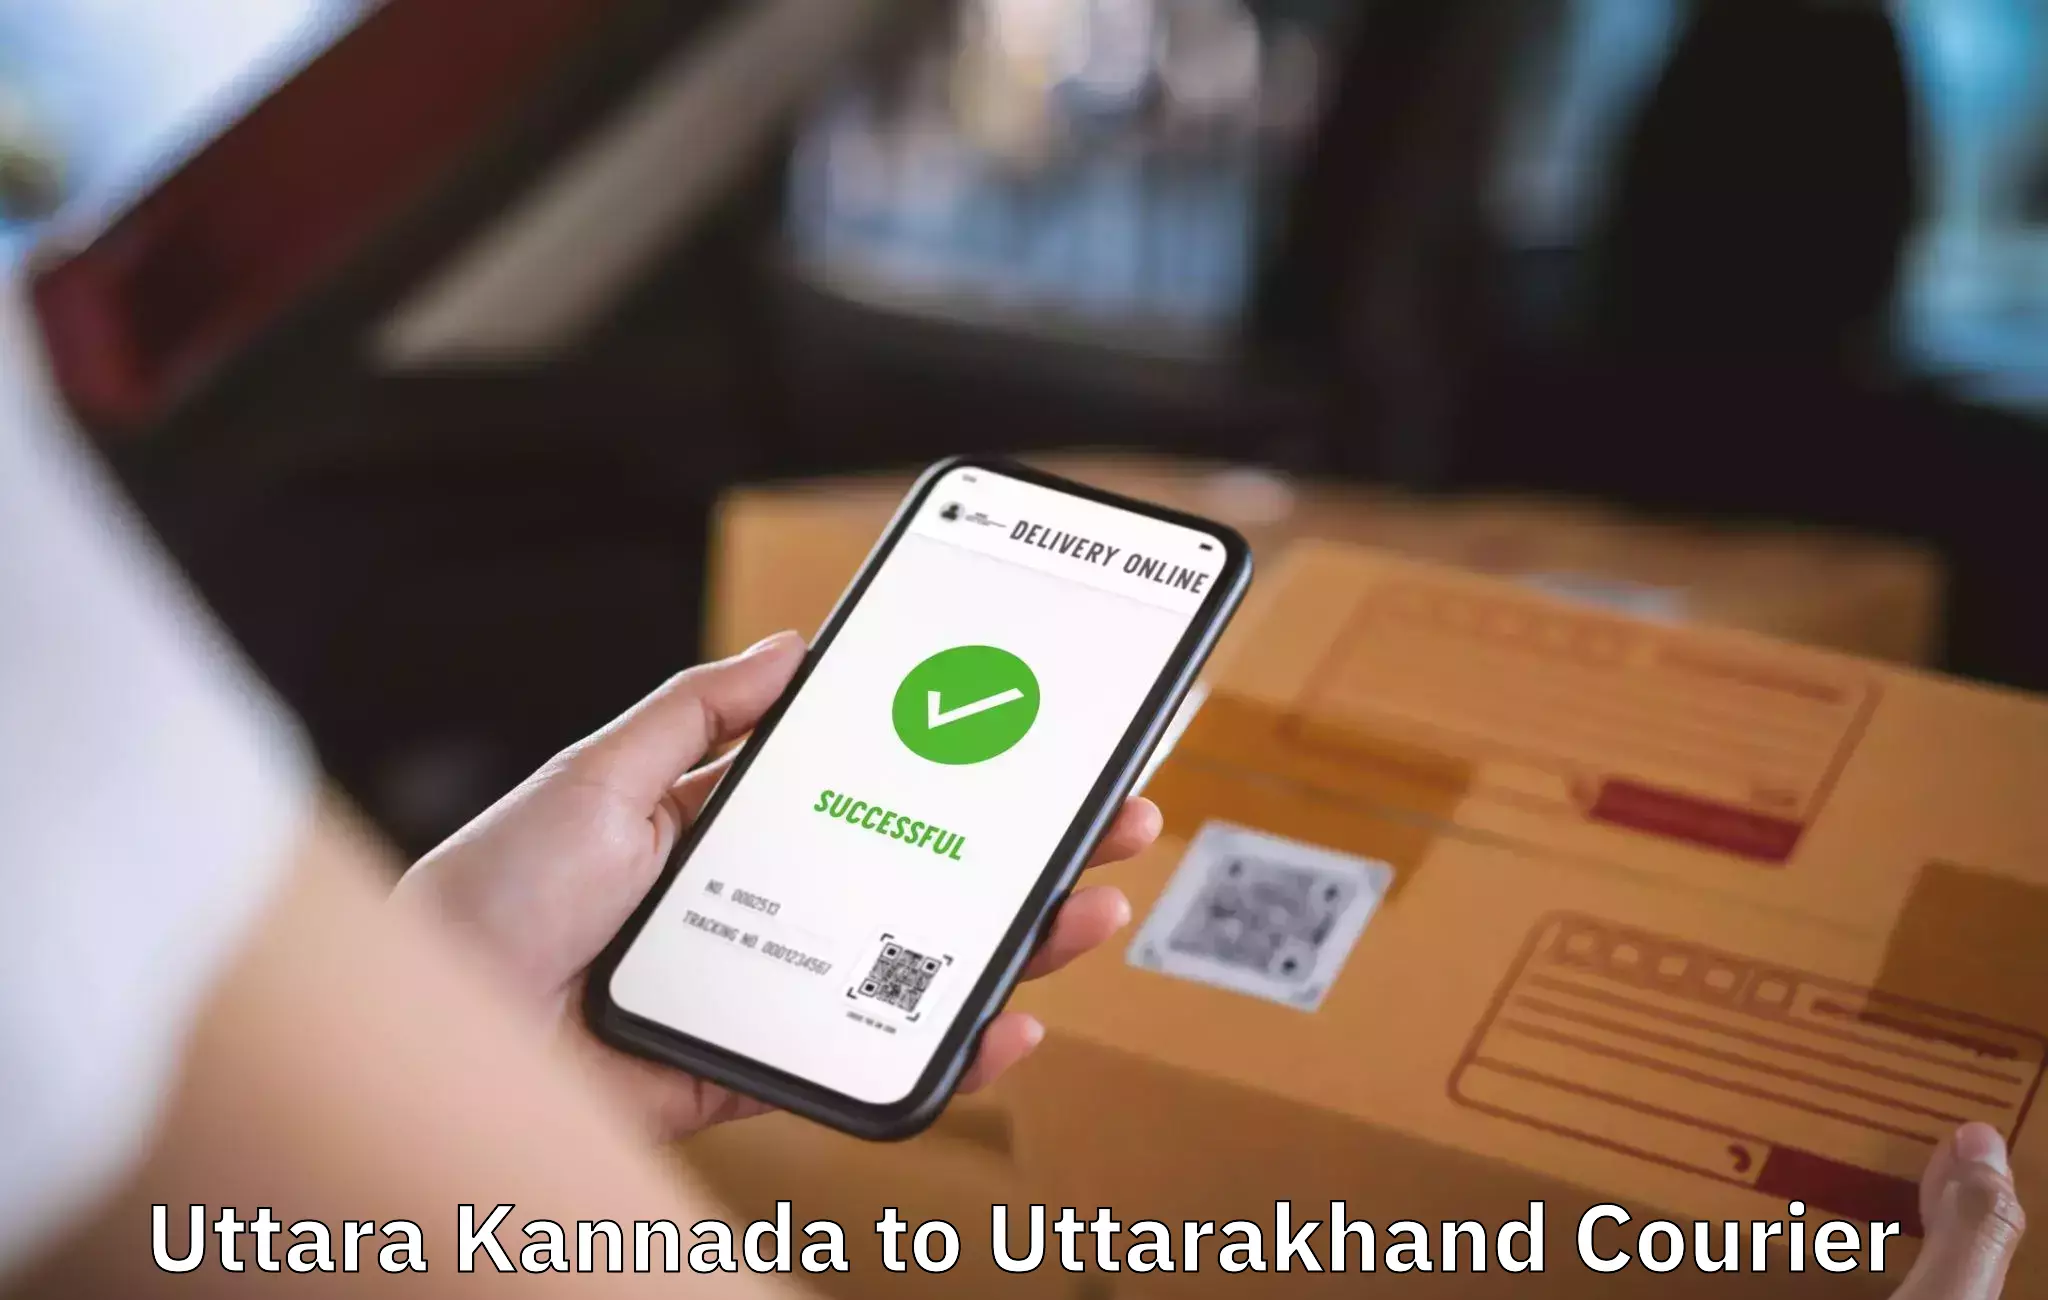 Professional moving assistance Uttara Kannada to Paithani